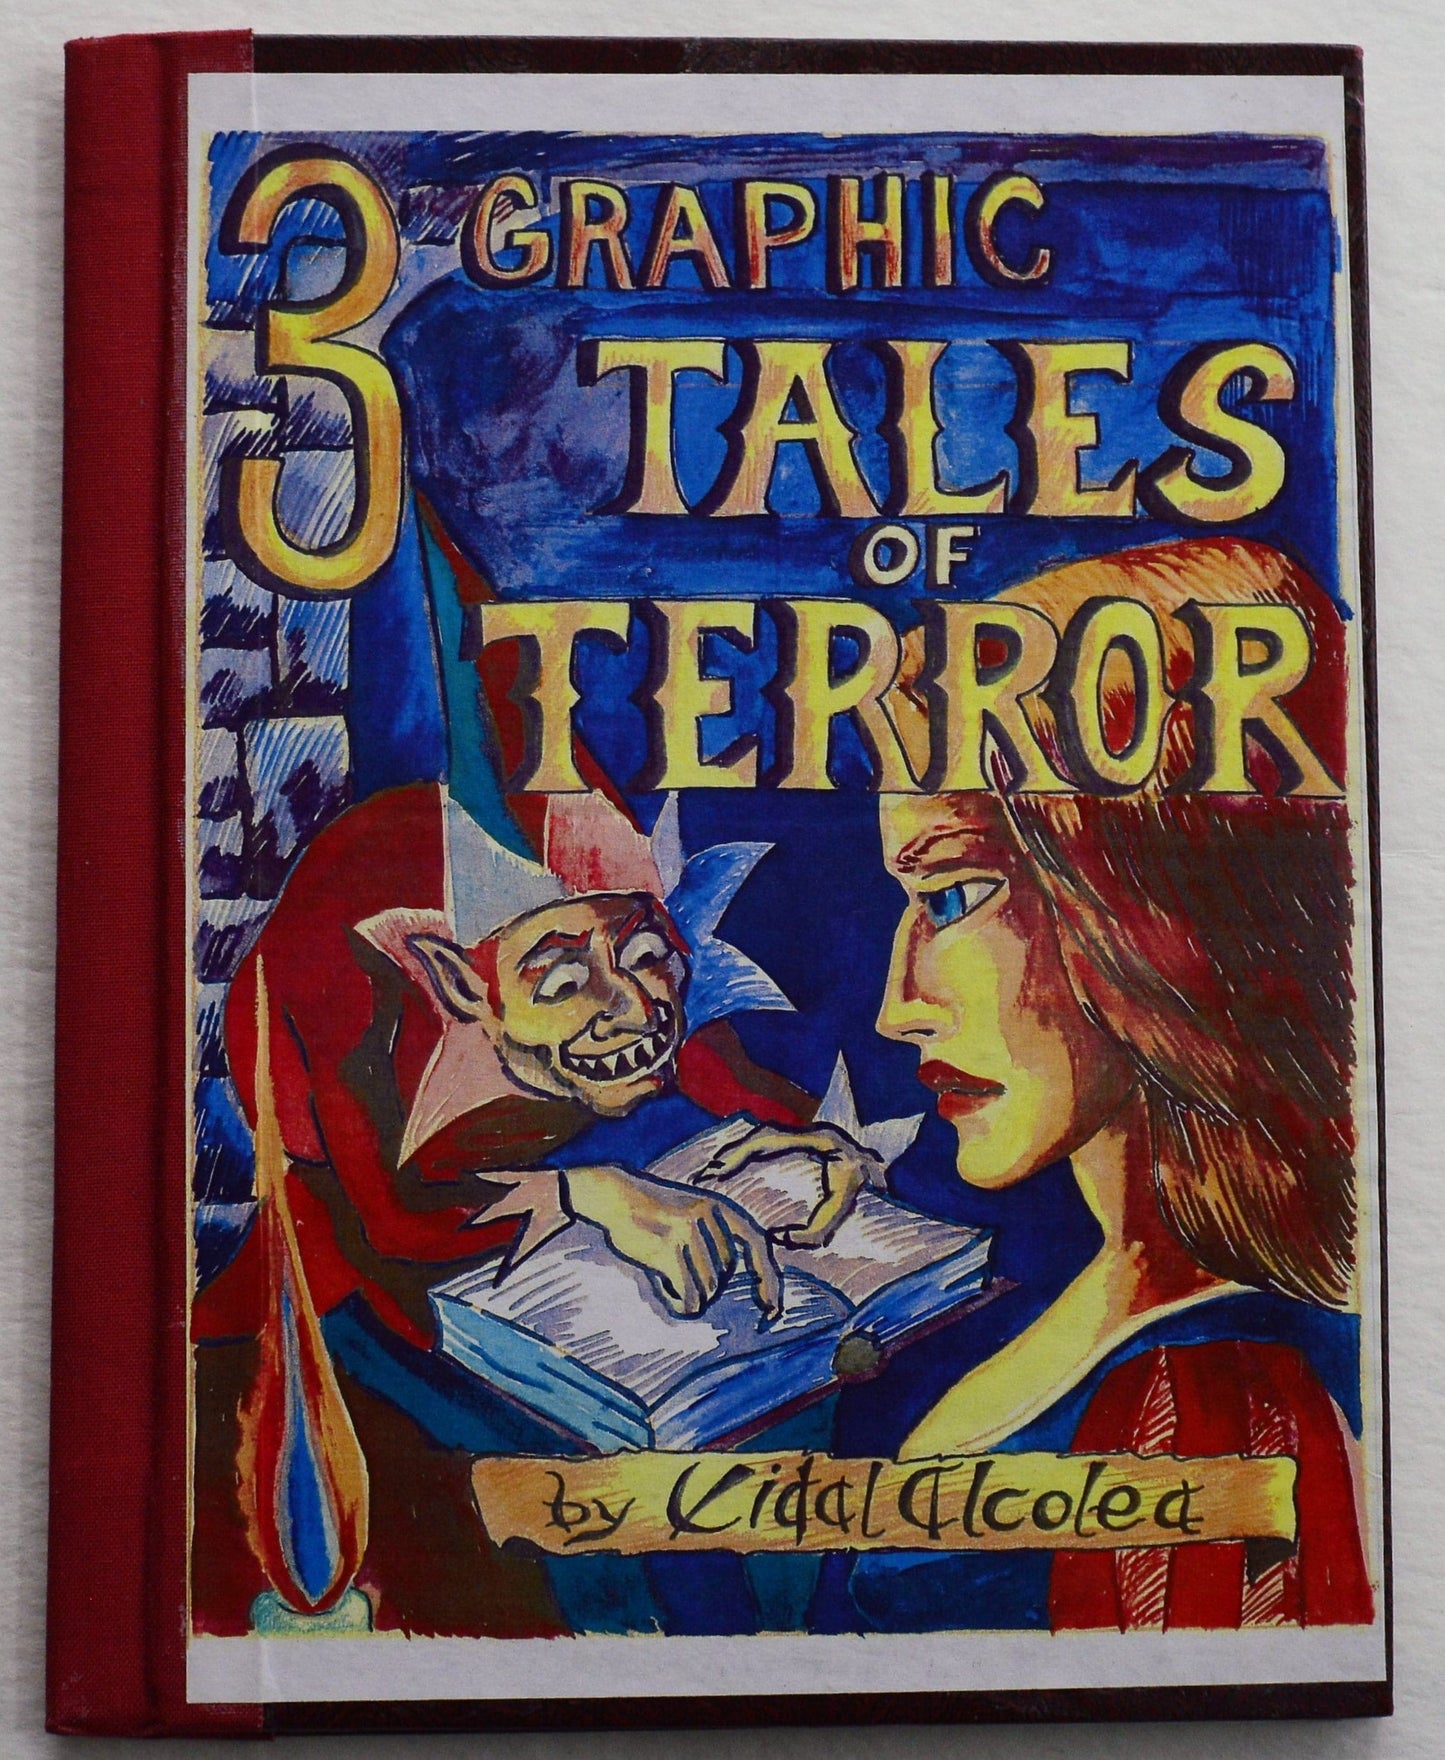 3 Graphic Tales of Terror - Vidal Alcolea